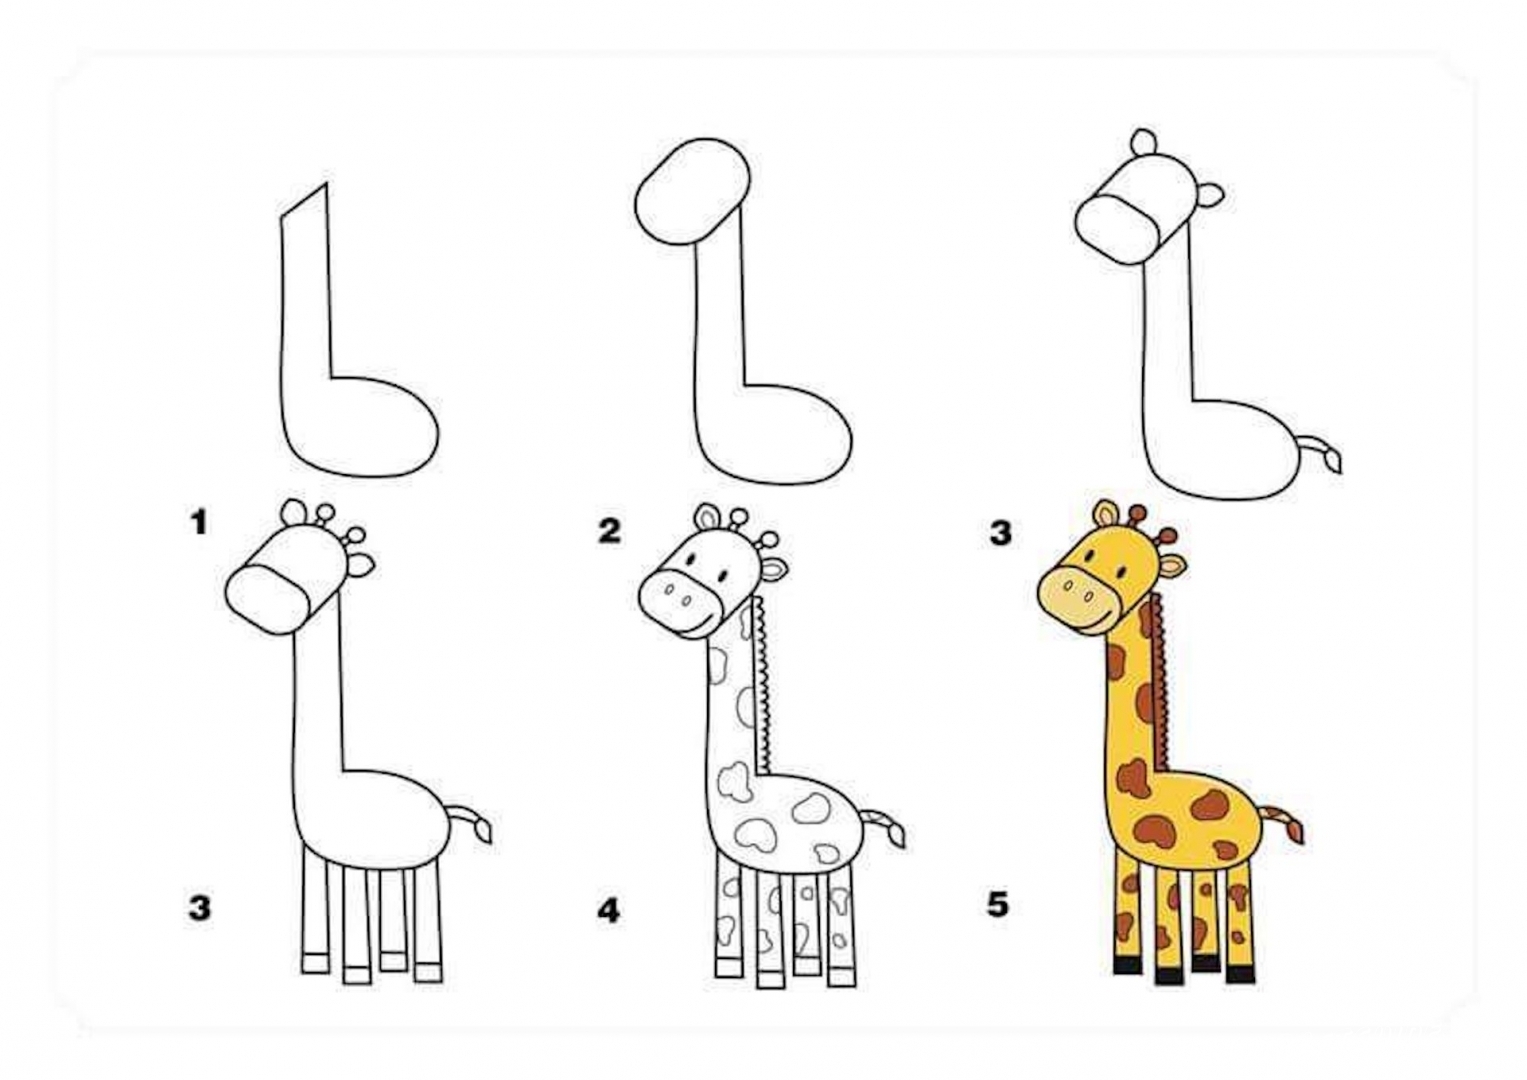 Жираф - учимся рисовать животных поэтапно - КлуКлу